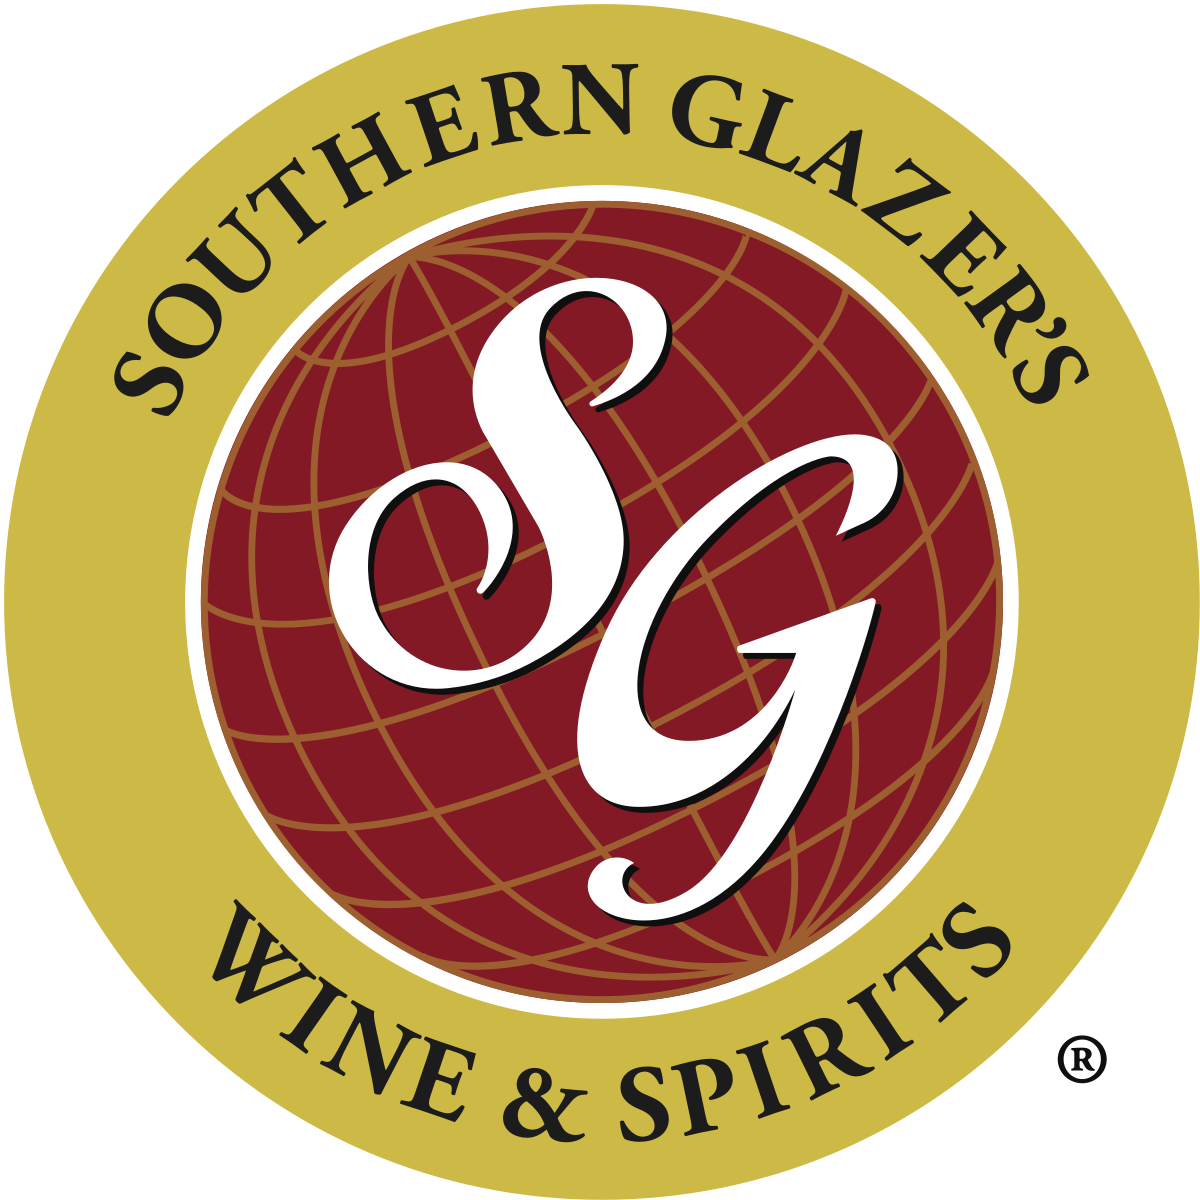 Southern_Glazer's_Wine_&_Spirits_Logo.svg.png